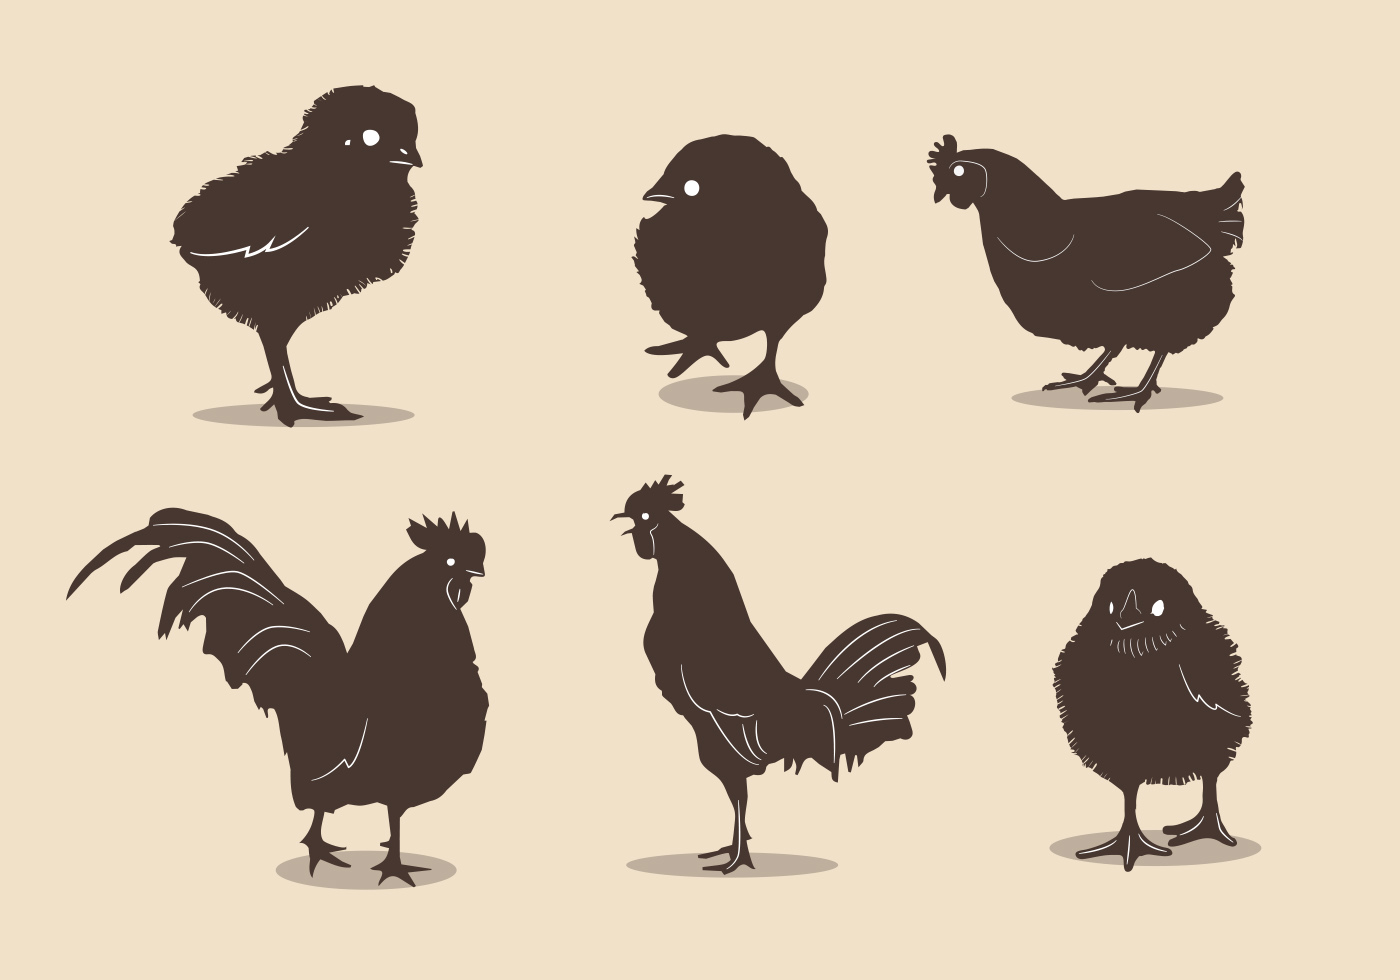 Download Chicken silhouette vectors - Download Free Vector Art ...